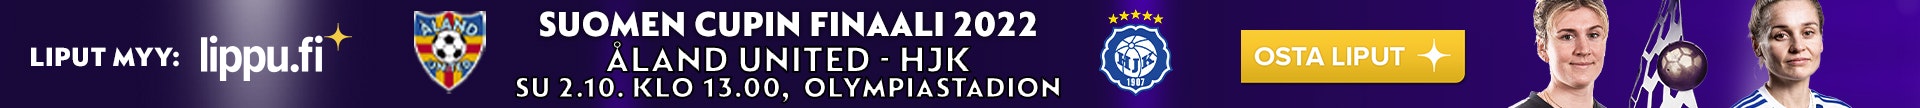 Naisten Suomen Cupin finaali 2022 - OSTA LIPUT tästä!